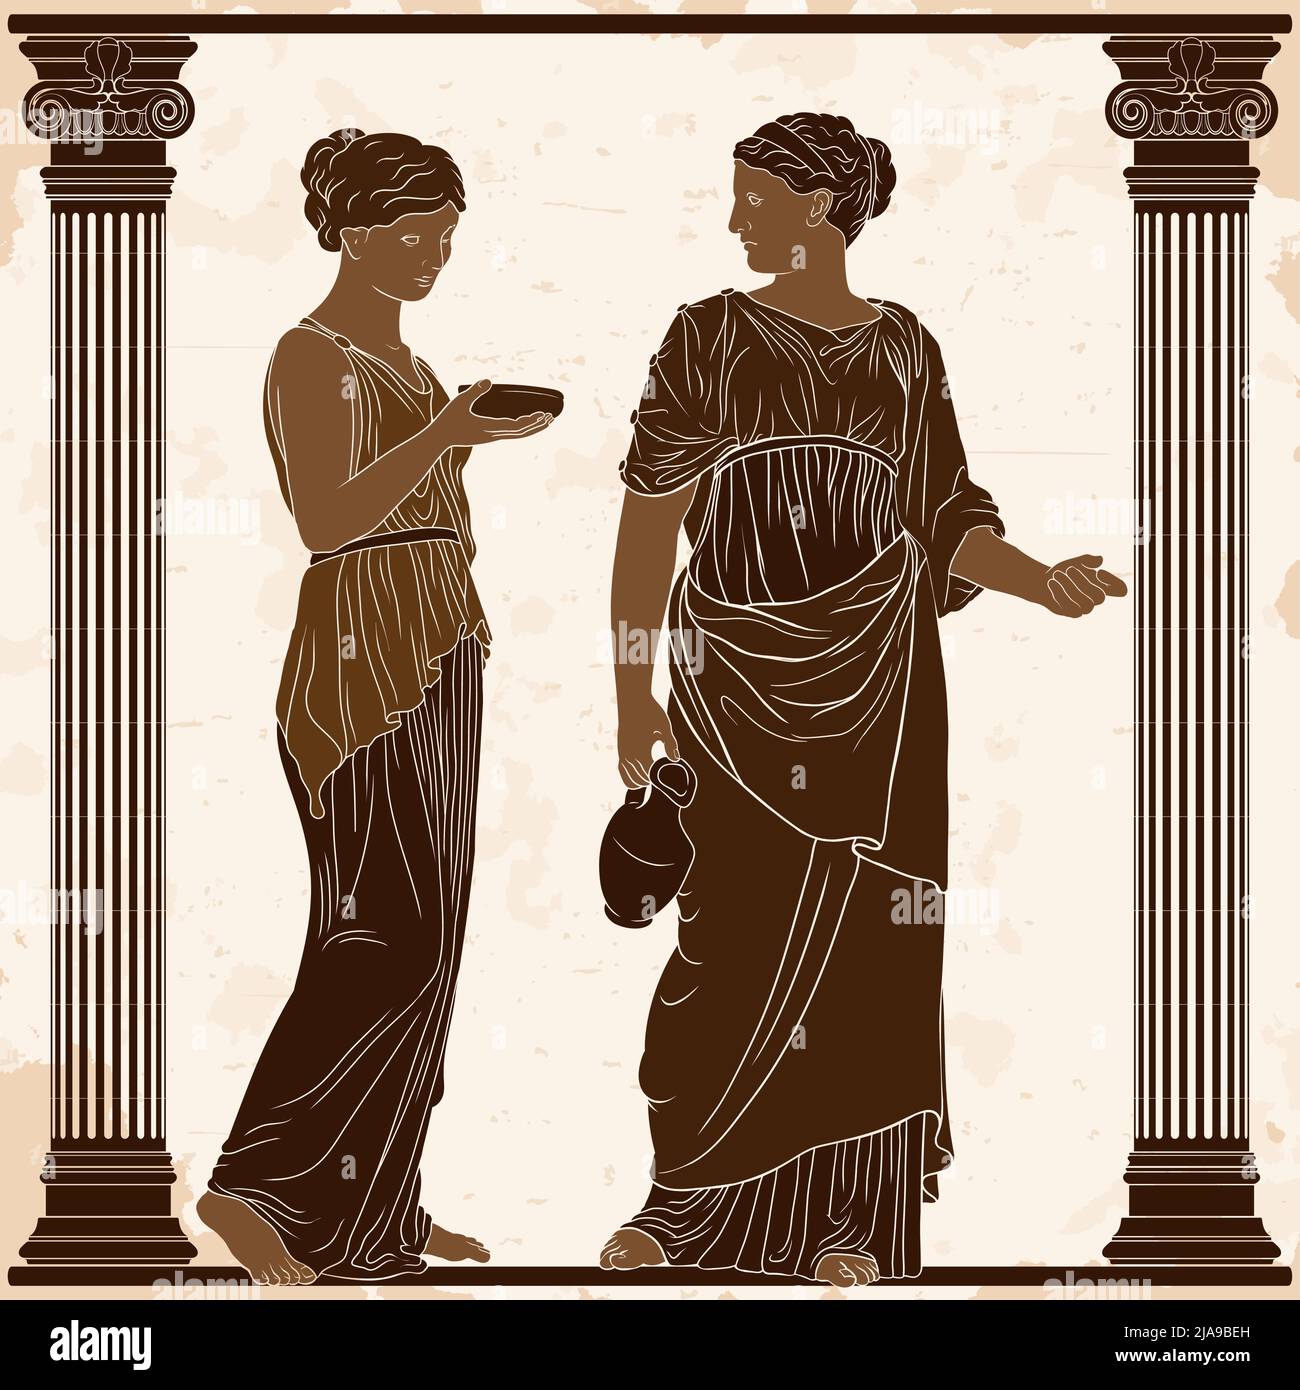 Zwei altgriechische Frauen in Tuniken mit einem Krug und einer Schale in den Händen stehen im Tempel zwischen zwei Säulen. Stock Vektor